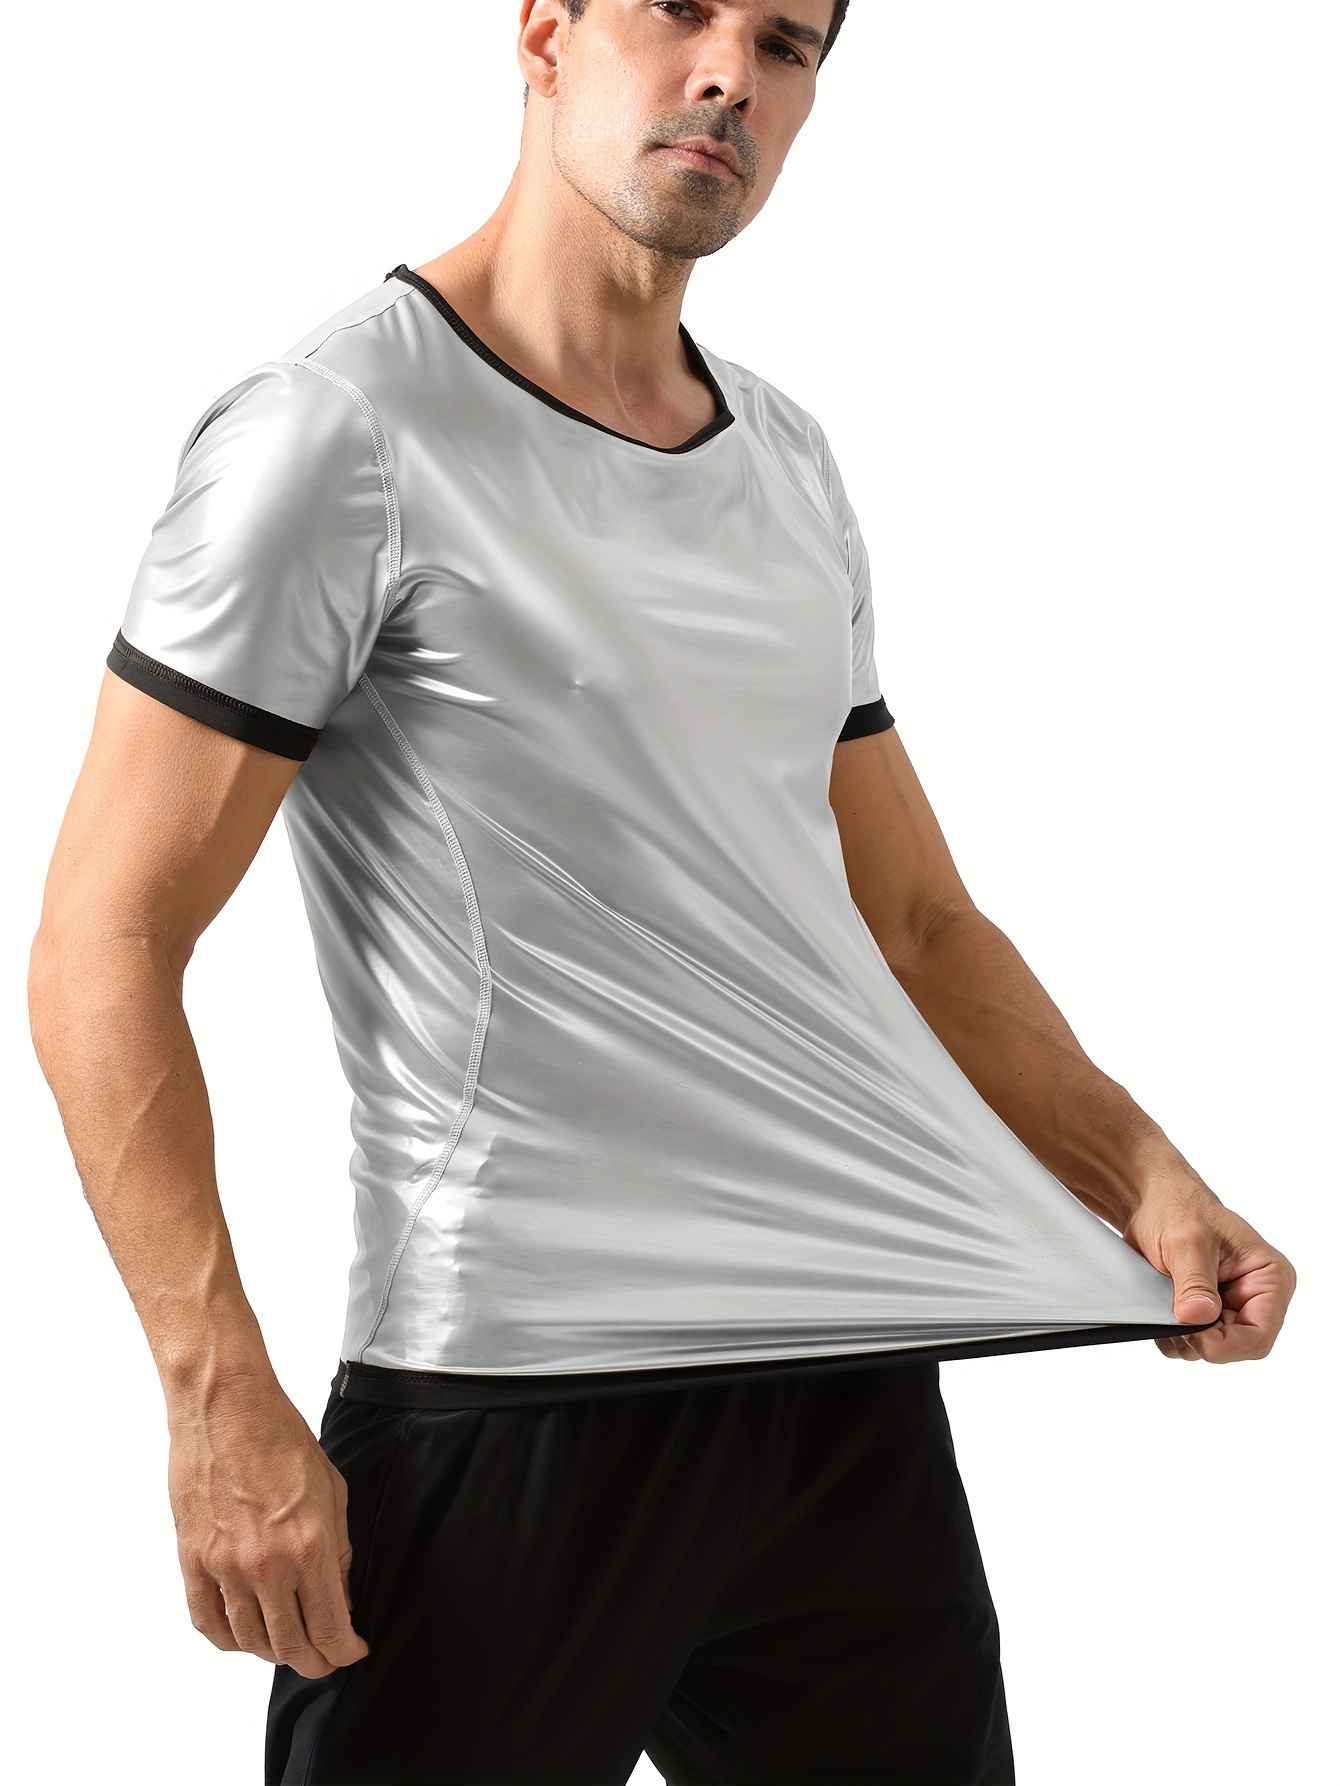 Camiseta Shiny Fitness hombre